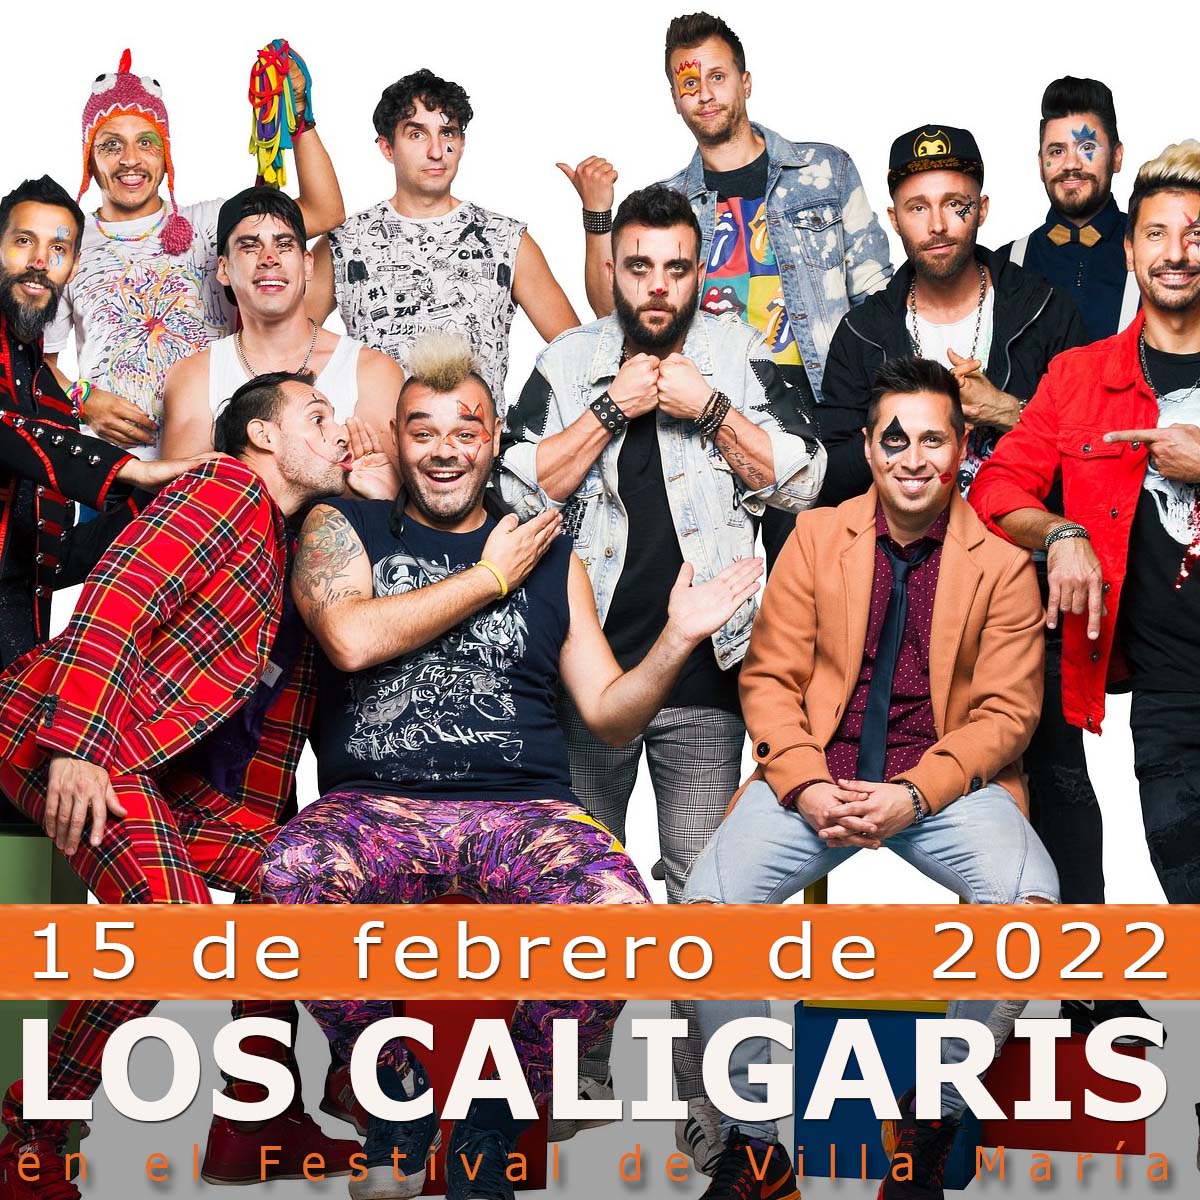 Los Caligaris en el Festival Villa María 2022